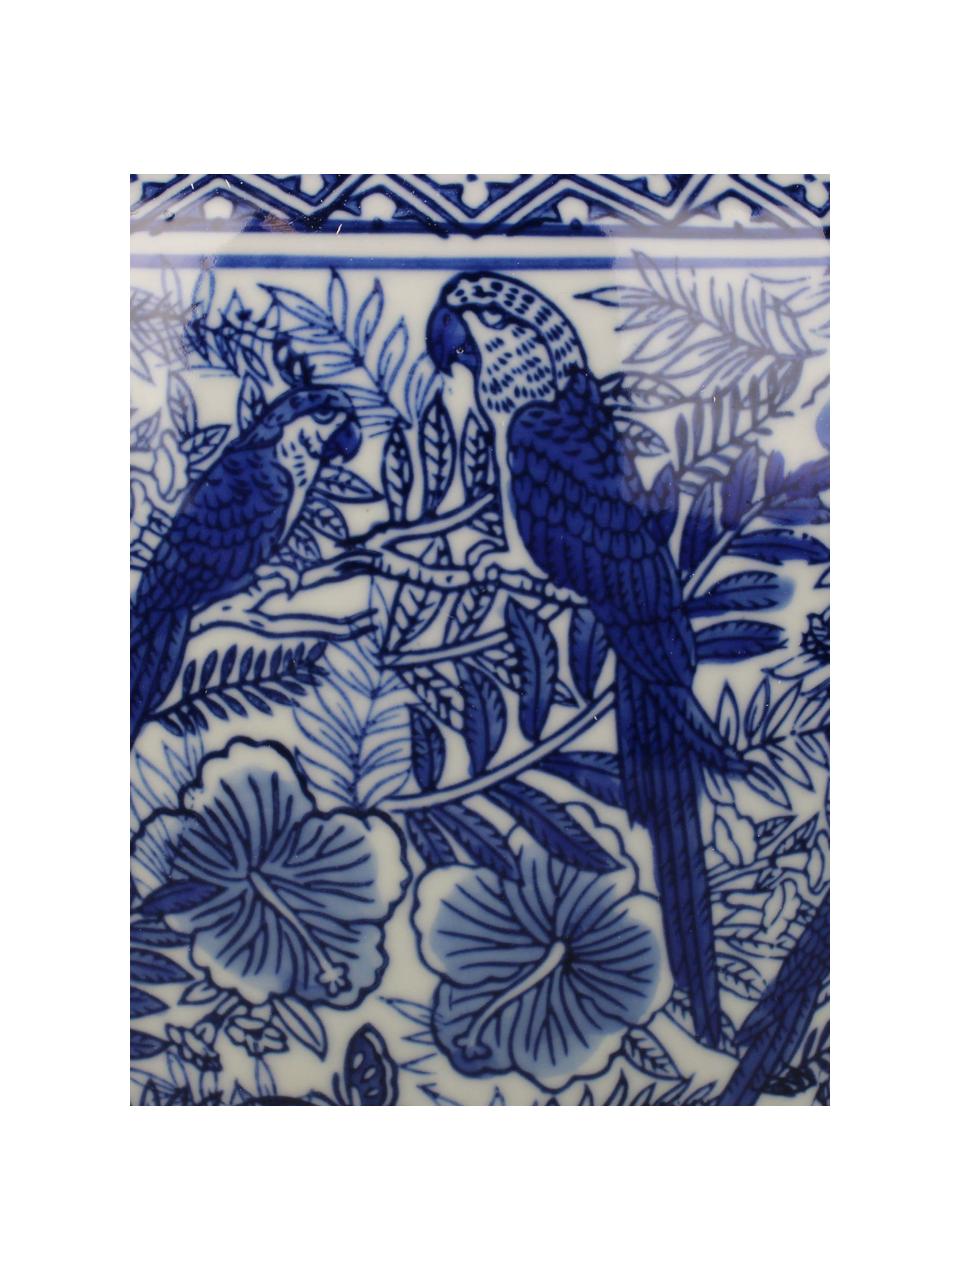 Velký obal na květináč z porcelánu Parrots, Porcelán, Modrá, bílá, Ø 25 cm, V 28 cm